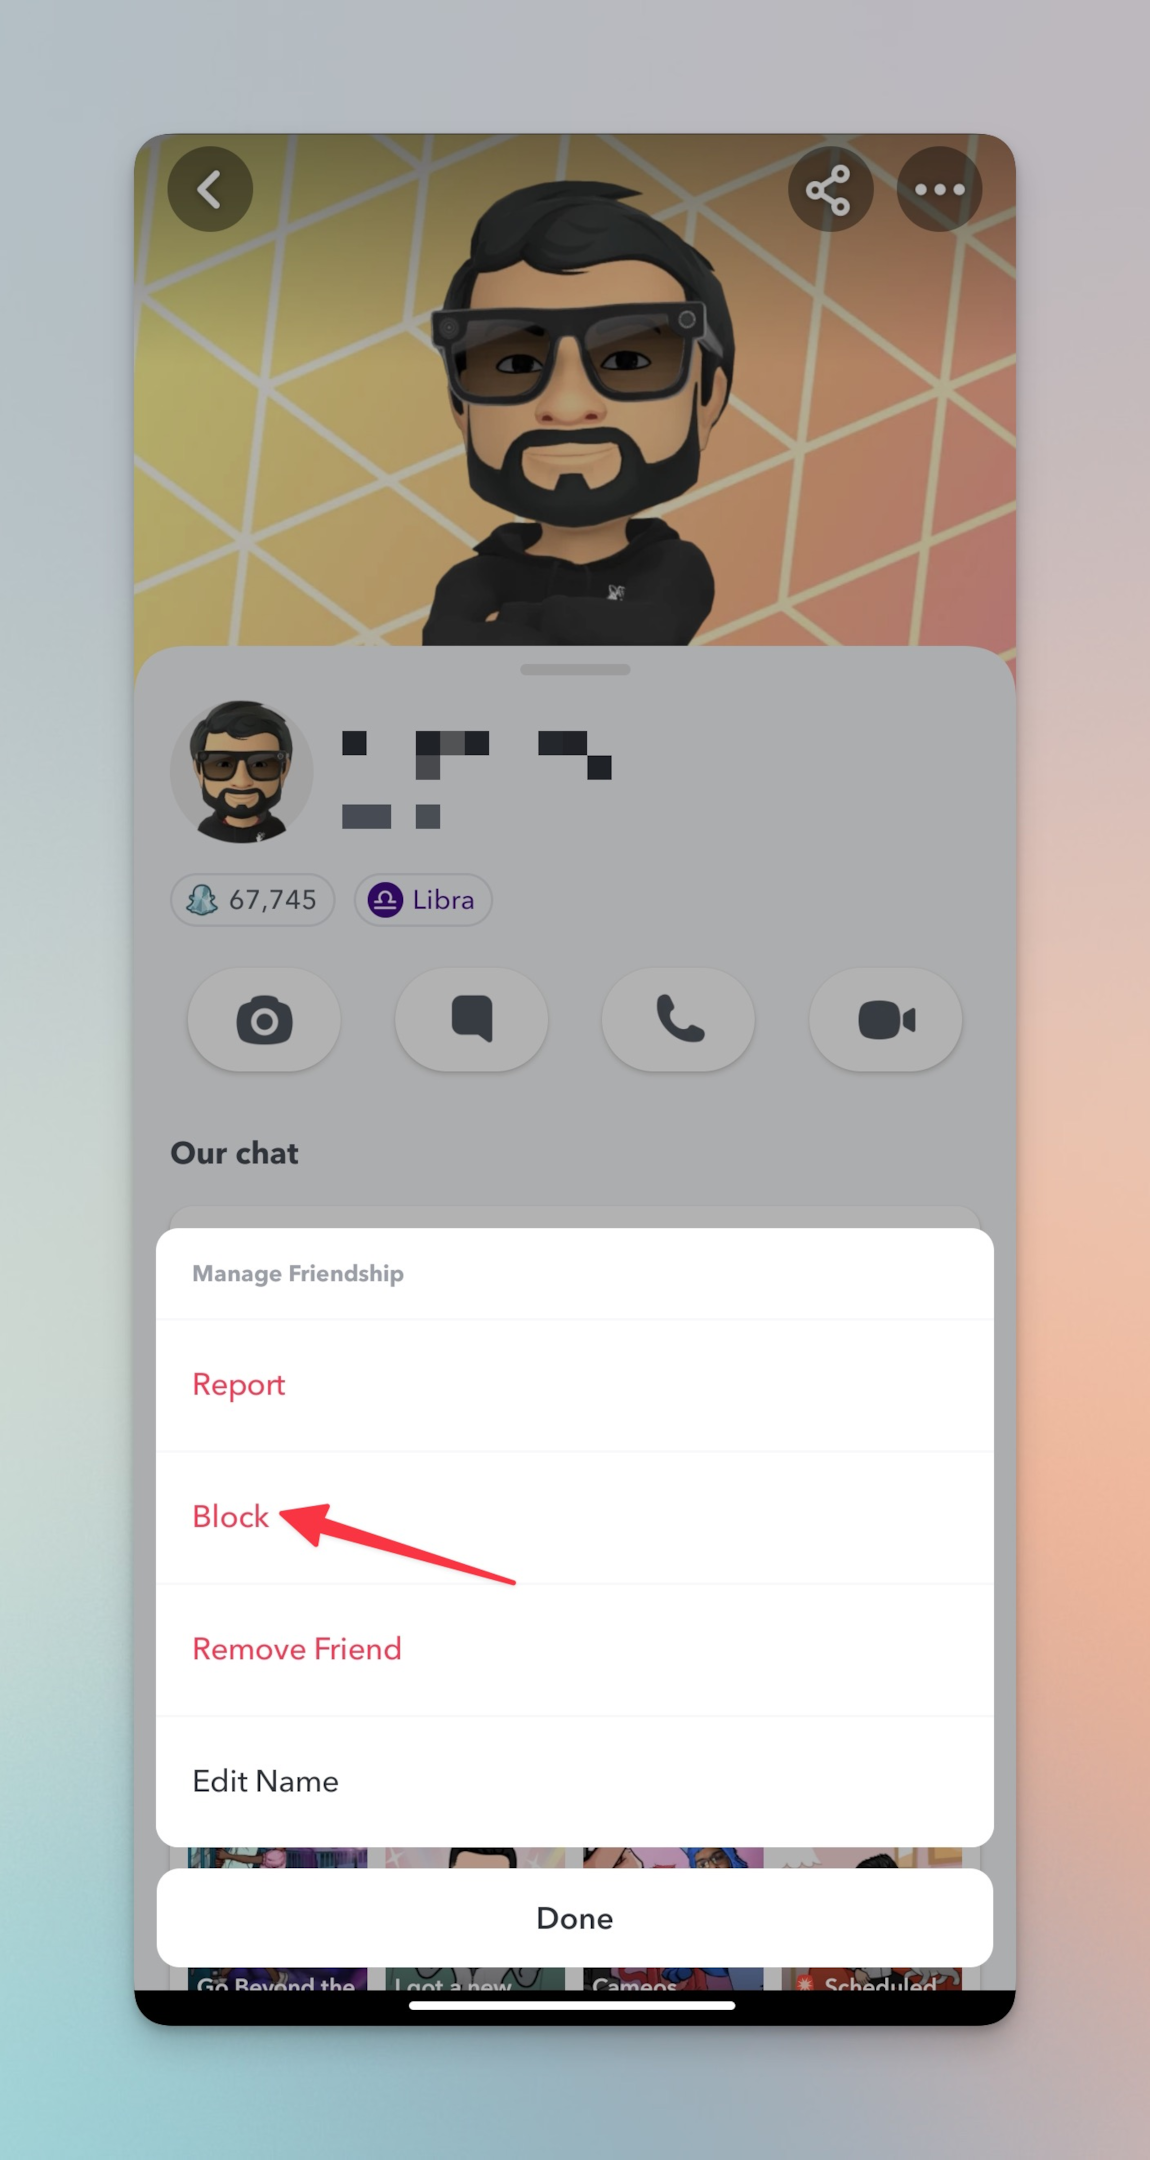 Remote.tools сочи, за да блокира опцията за блокиране на този акаунт в Snapchat